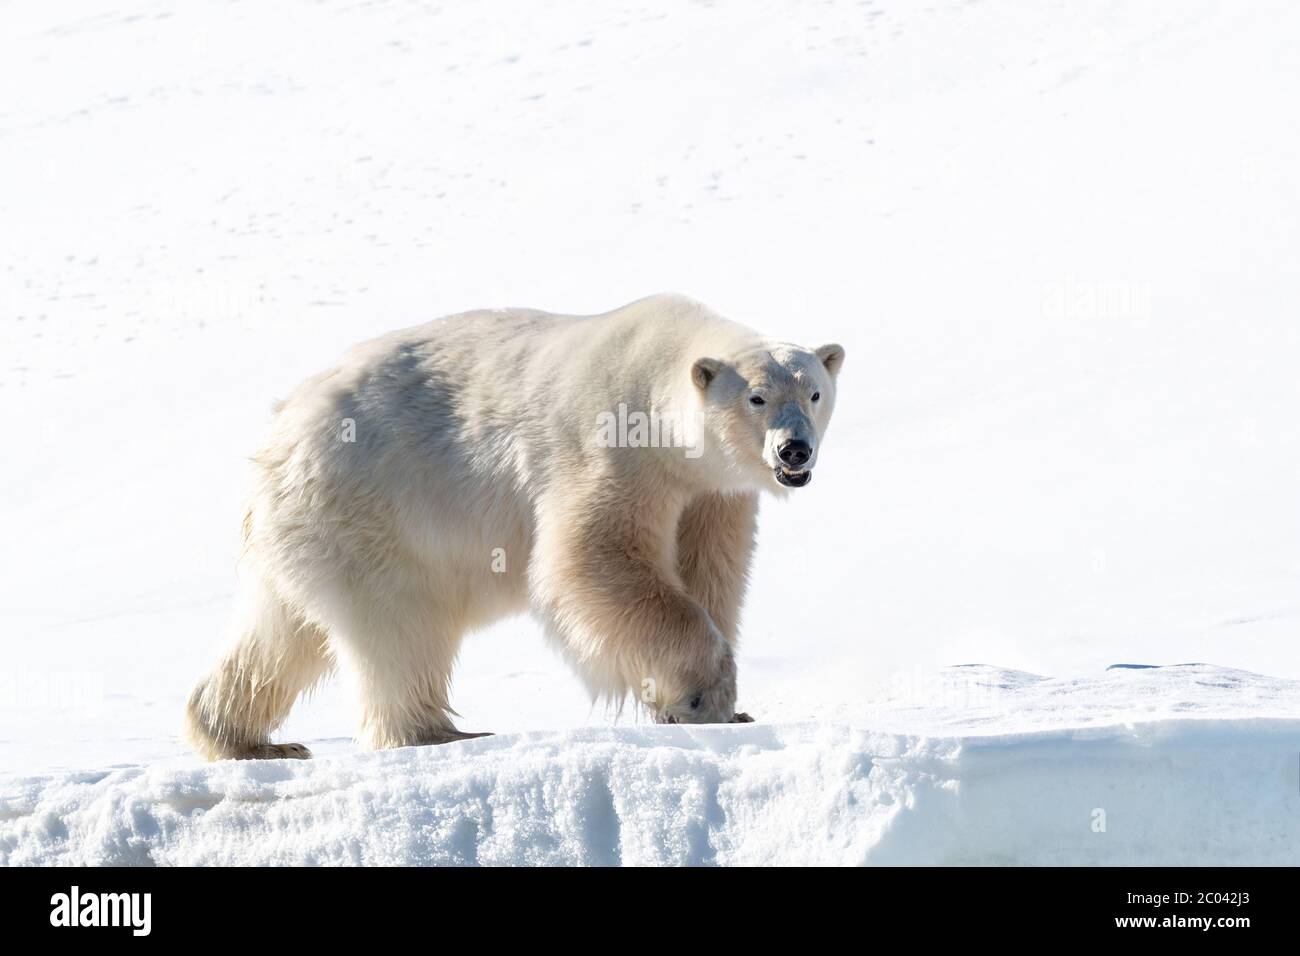 Orso polare maschile adulto, Ursus maritimus, sulla neve di Svalbard. Questa specie ha una popolazione in diminuzione ed è considerata vulnerabile. Foto Stock